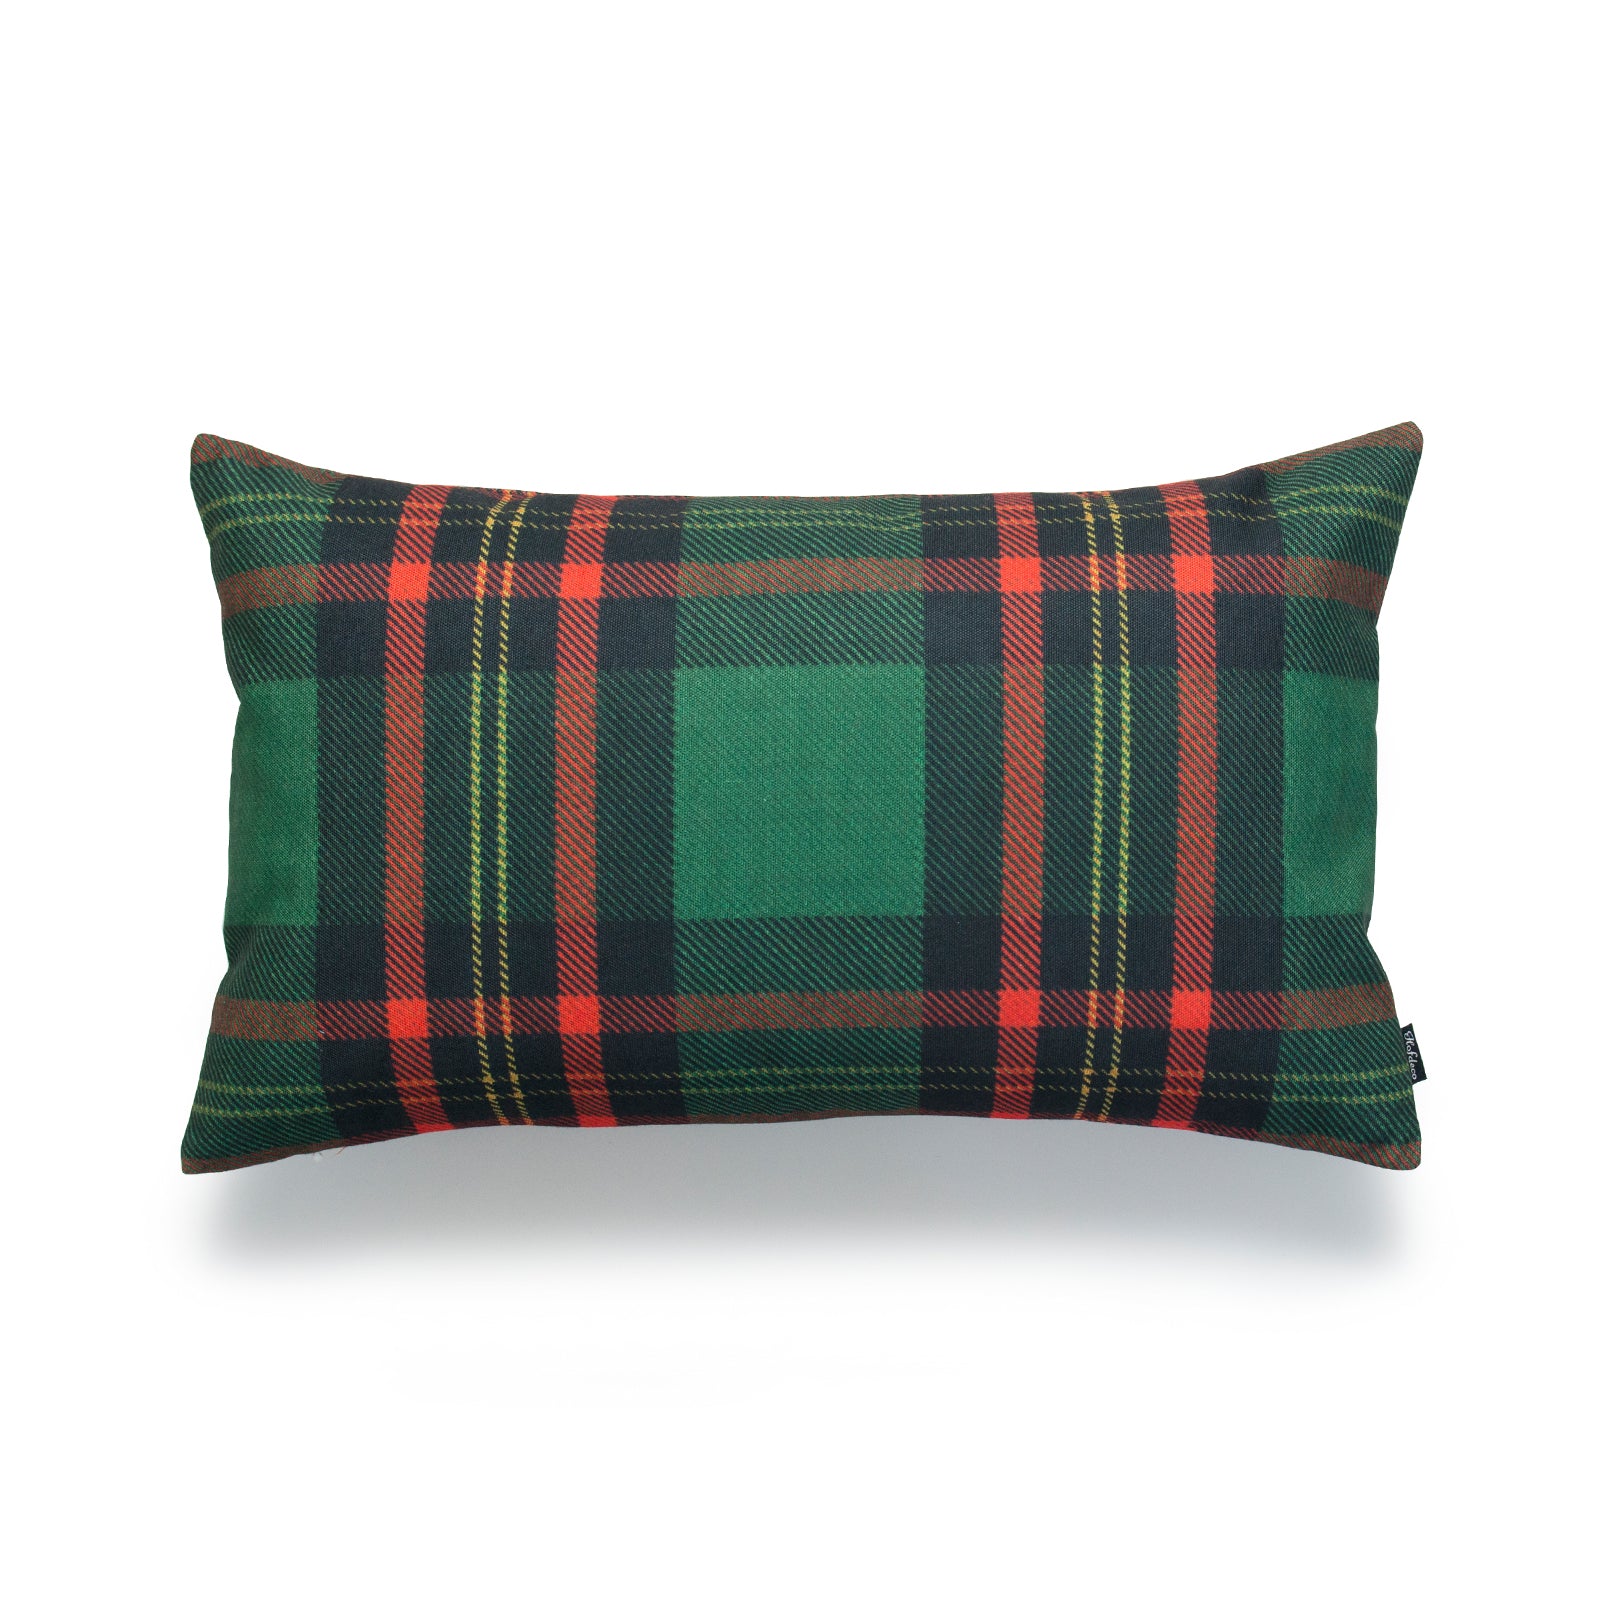 Holiday Lumbar Pillow Cover, Classic Moran Tartan Plaid, Green, 12"x20"